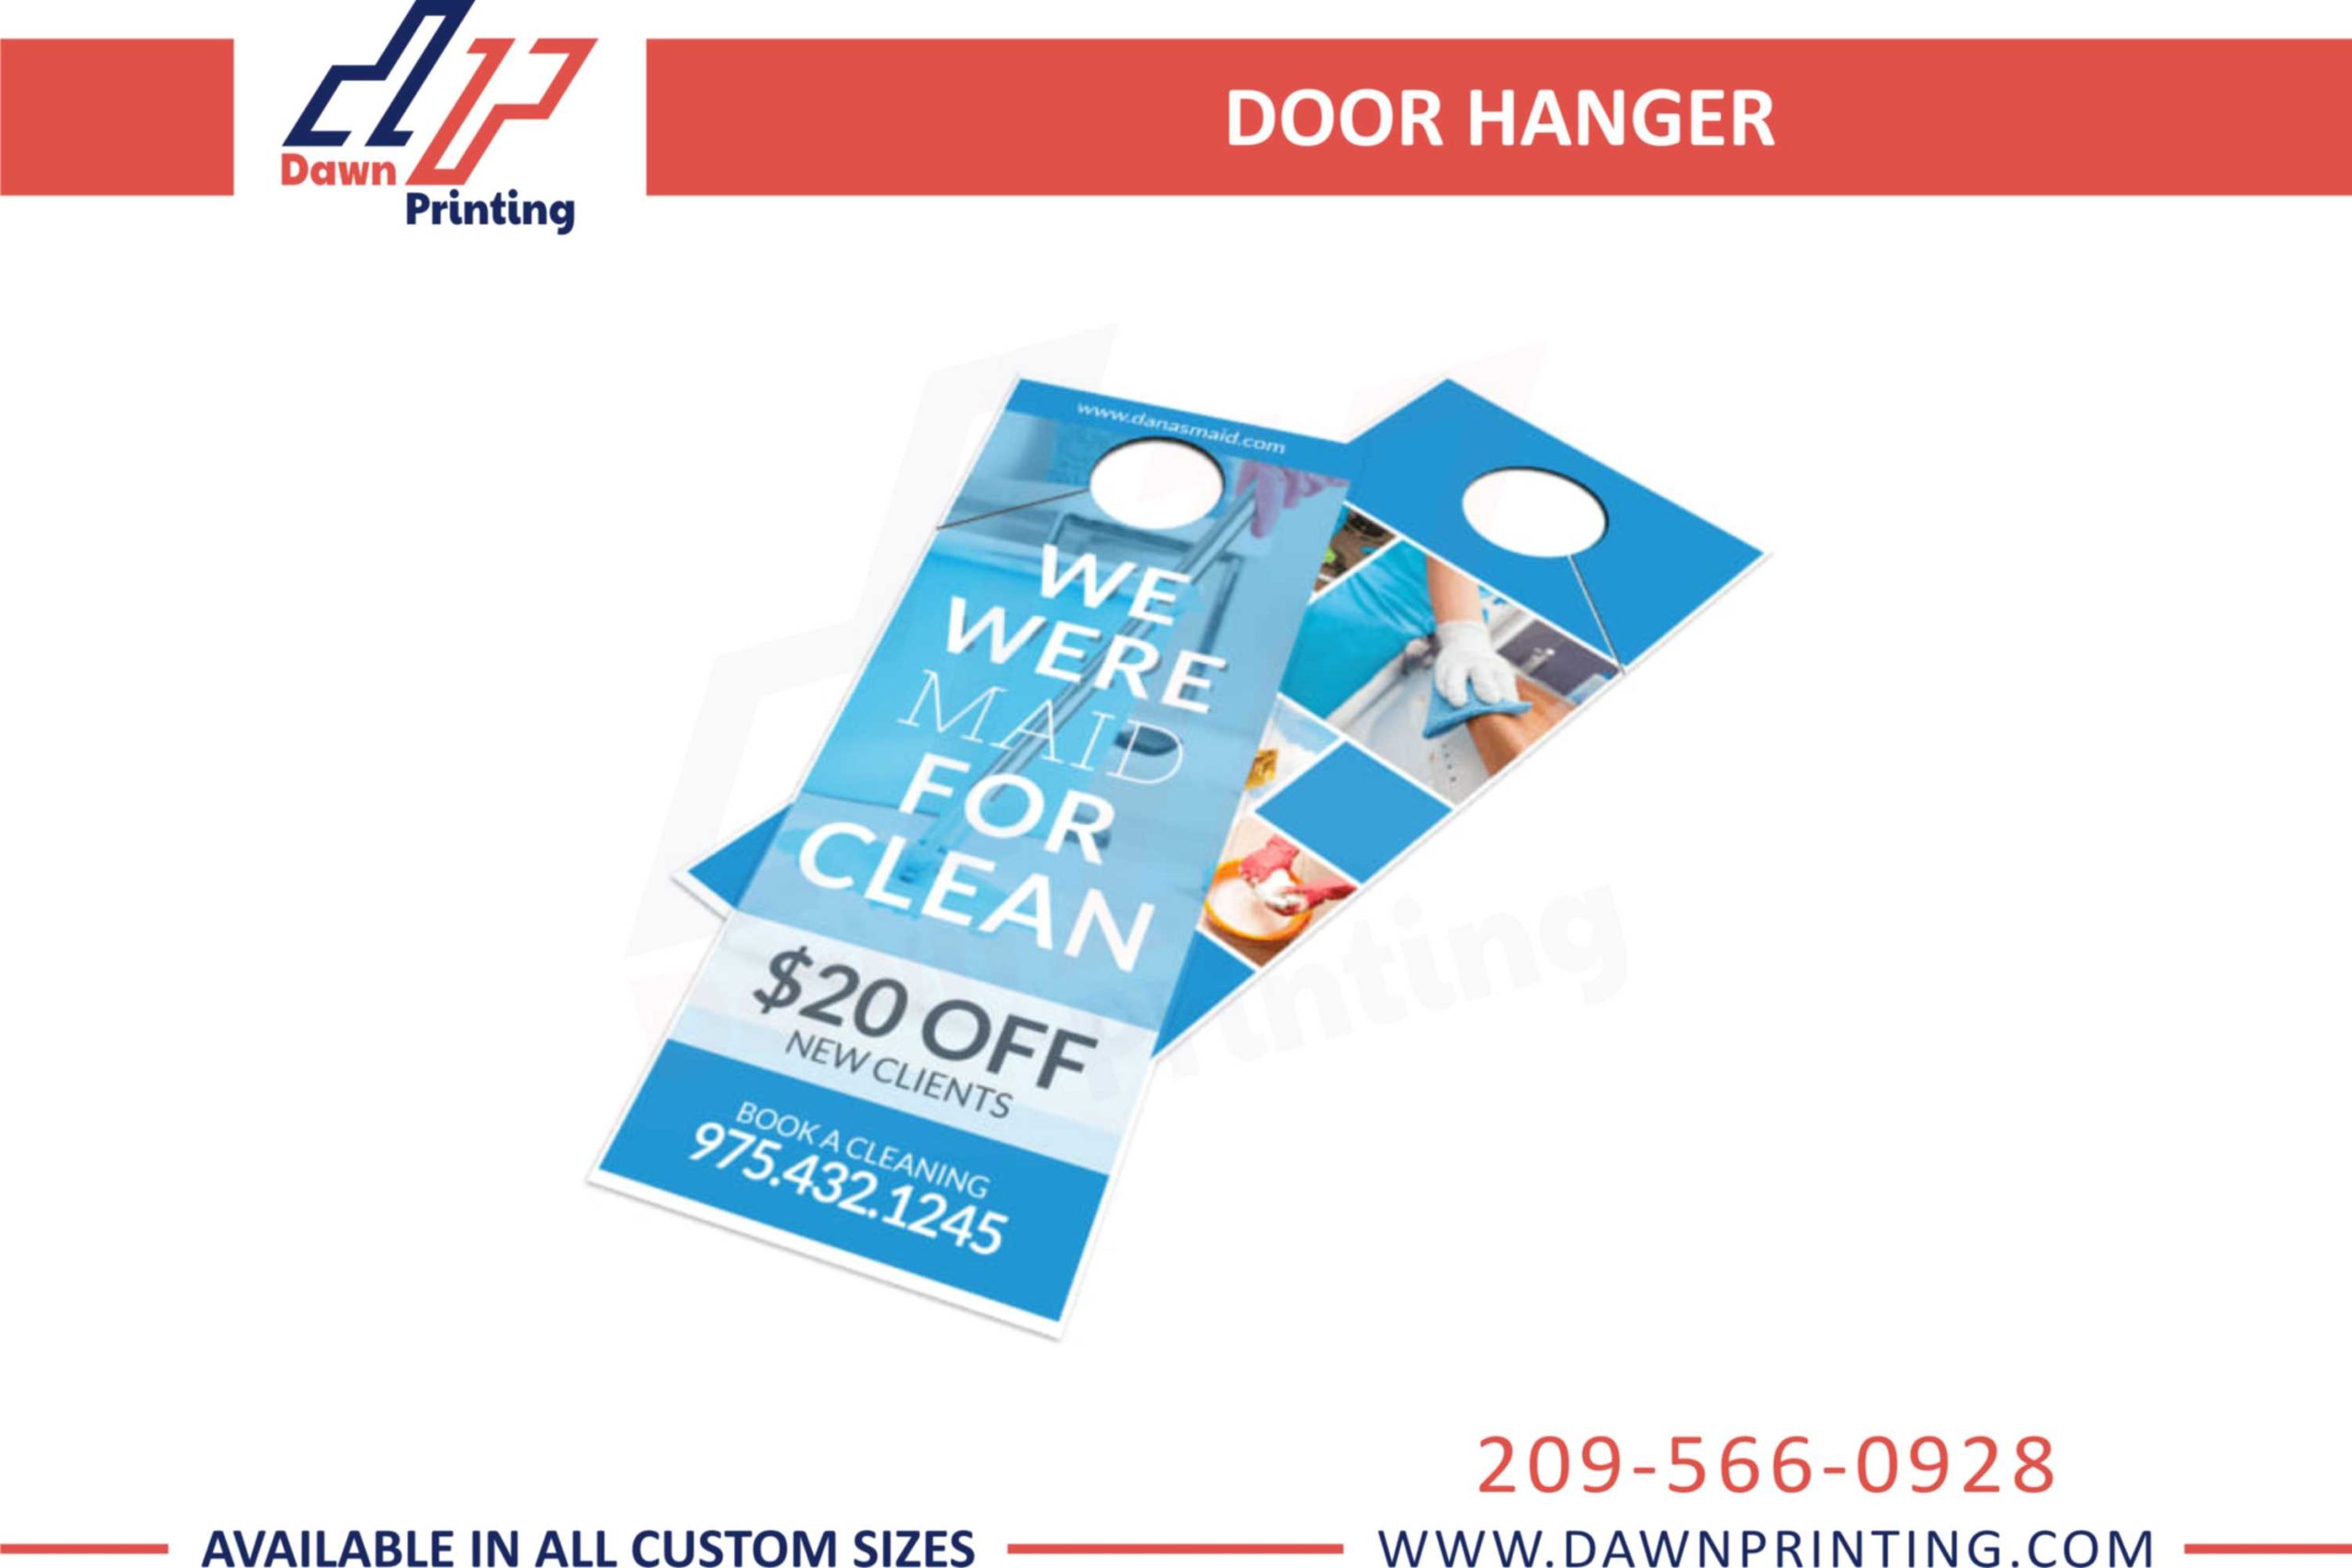 Buy Custom Door Hangers & Get 20% Off